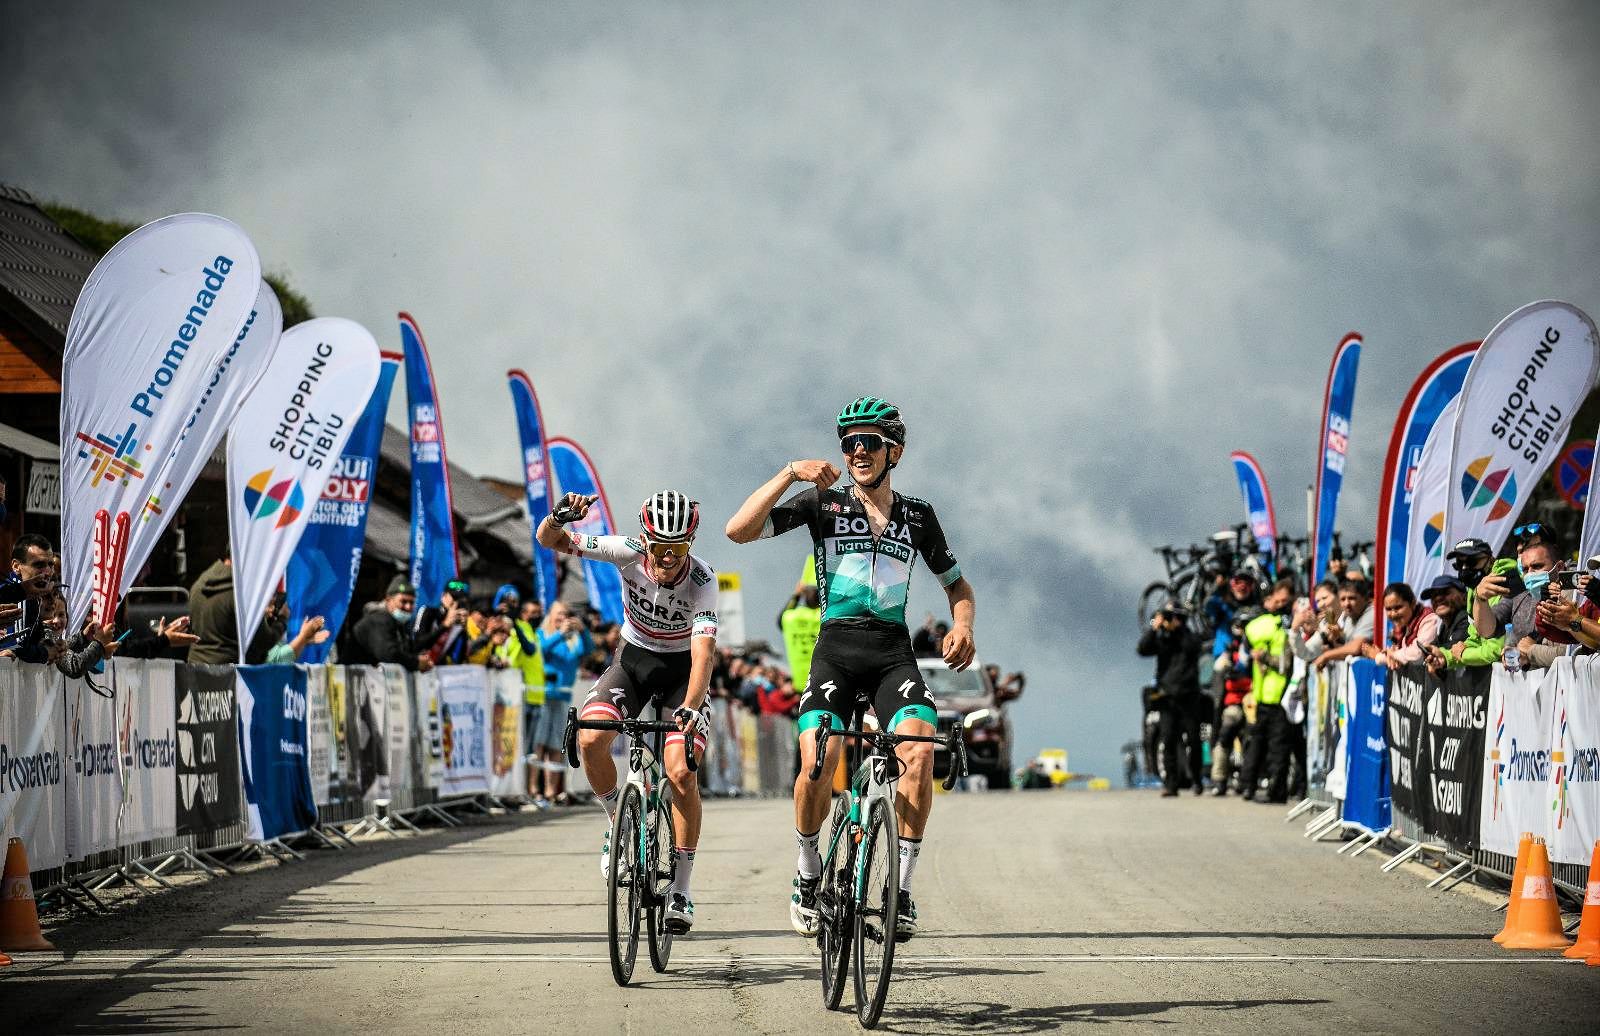 Sibiu Cycling Tour 2020: etap 1. Dublet Bory, Brożyna w czołówce